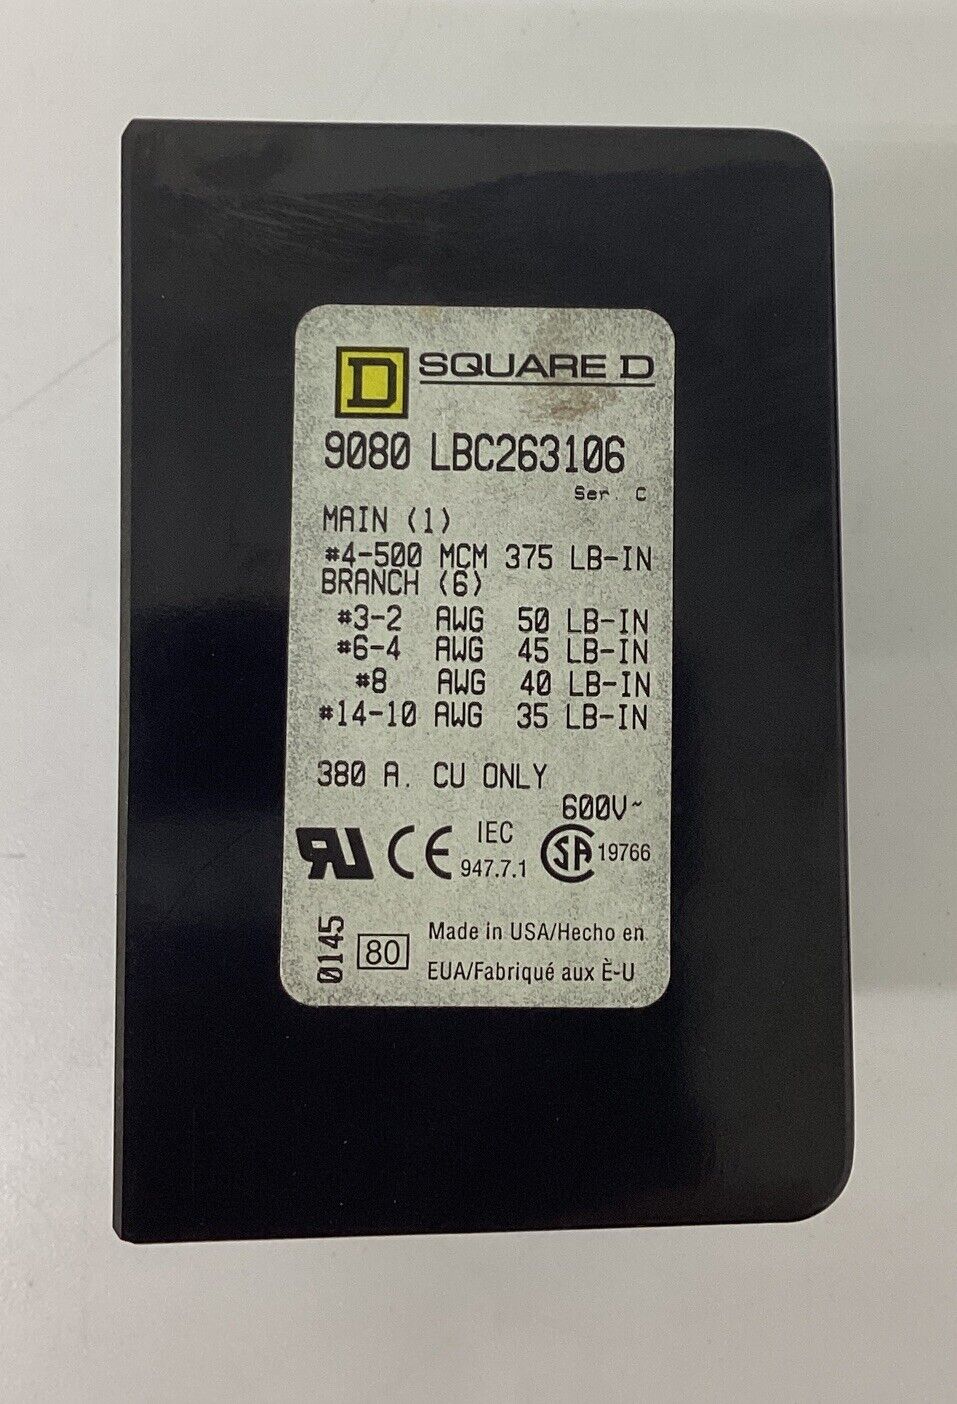 Square D 90B0-LBC263206 Power Distribution Box (CL106)